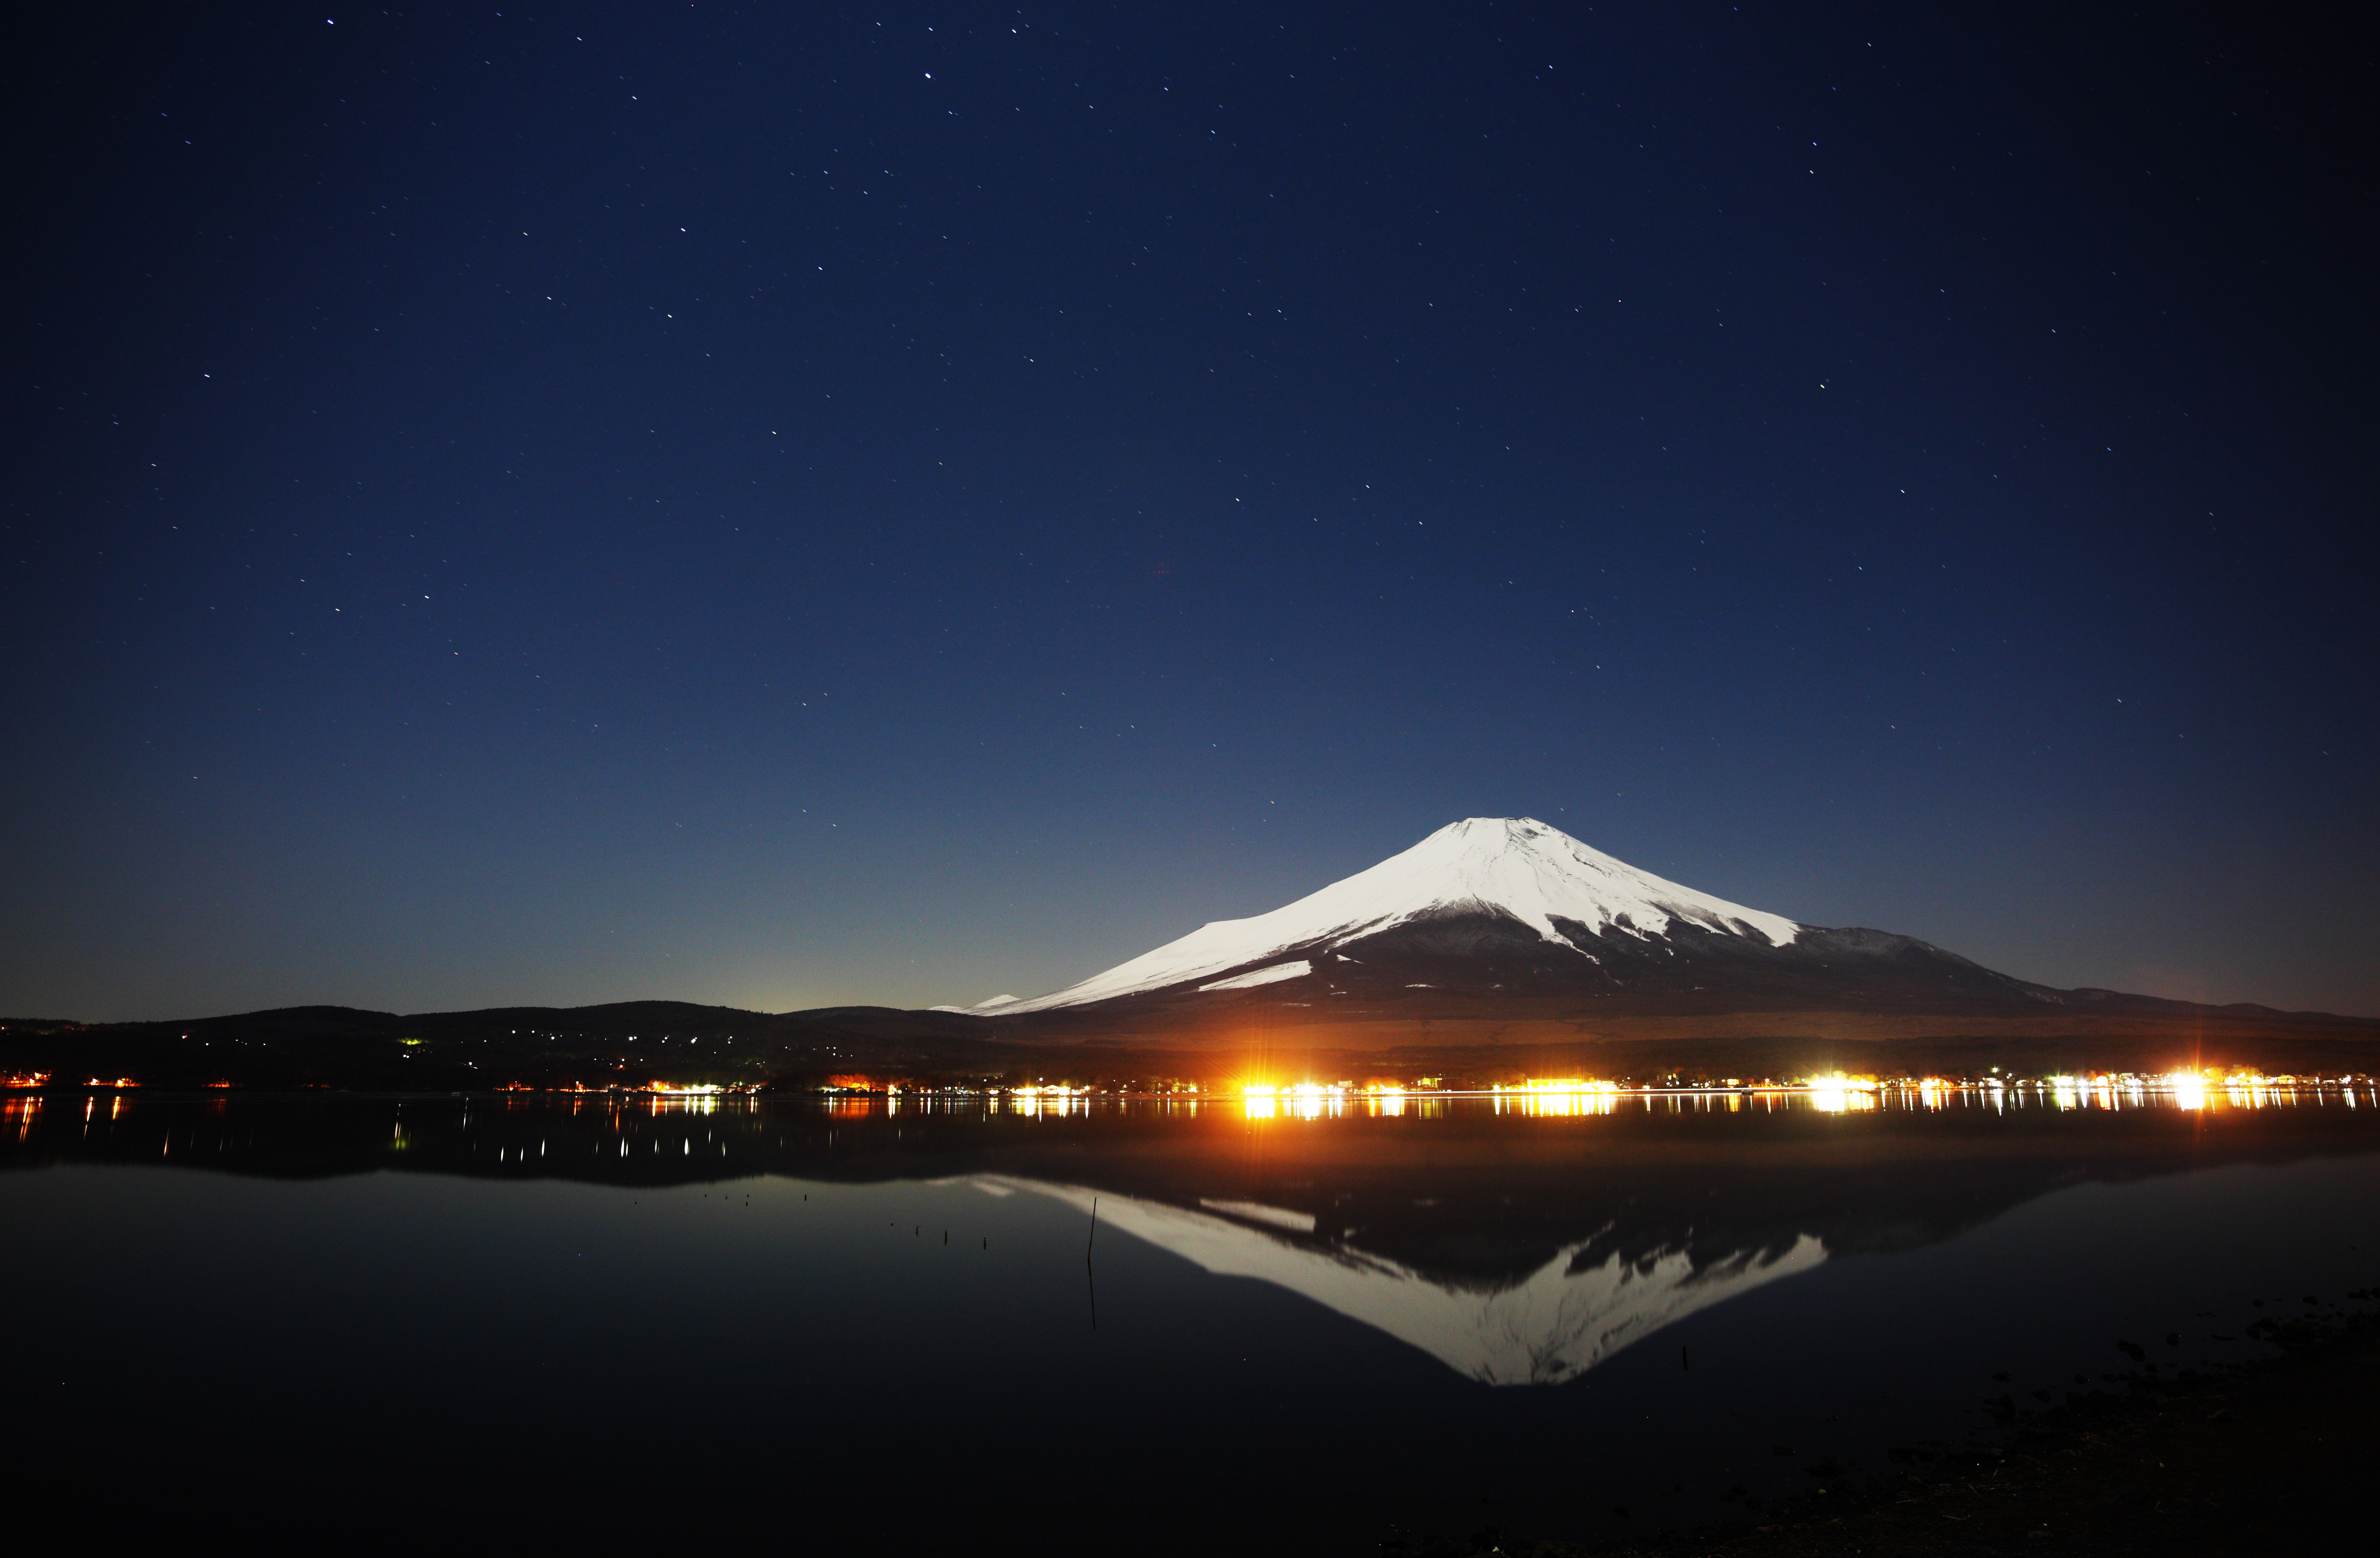 fotografia, material, livra, ajardine, imagine, proveja fotografia,Mt. Fuji, Fujiyama, As montanhas nevadas, superfcie de um lago, Cu iluminado pelas estrelas